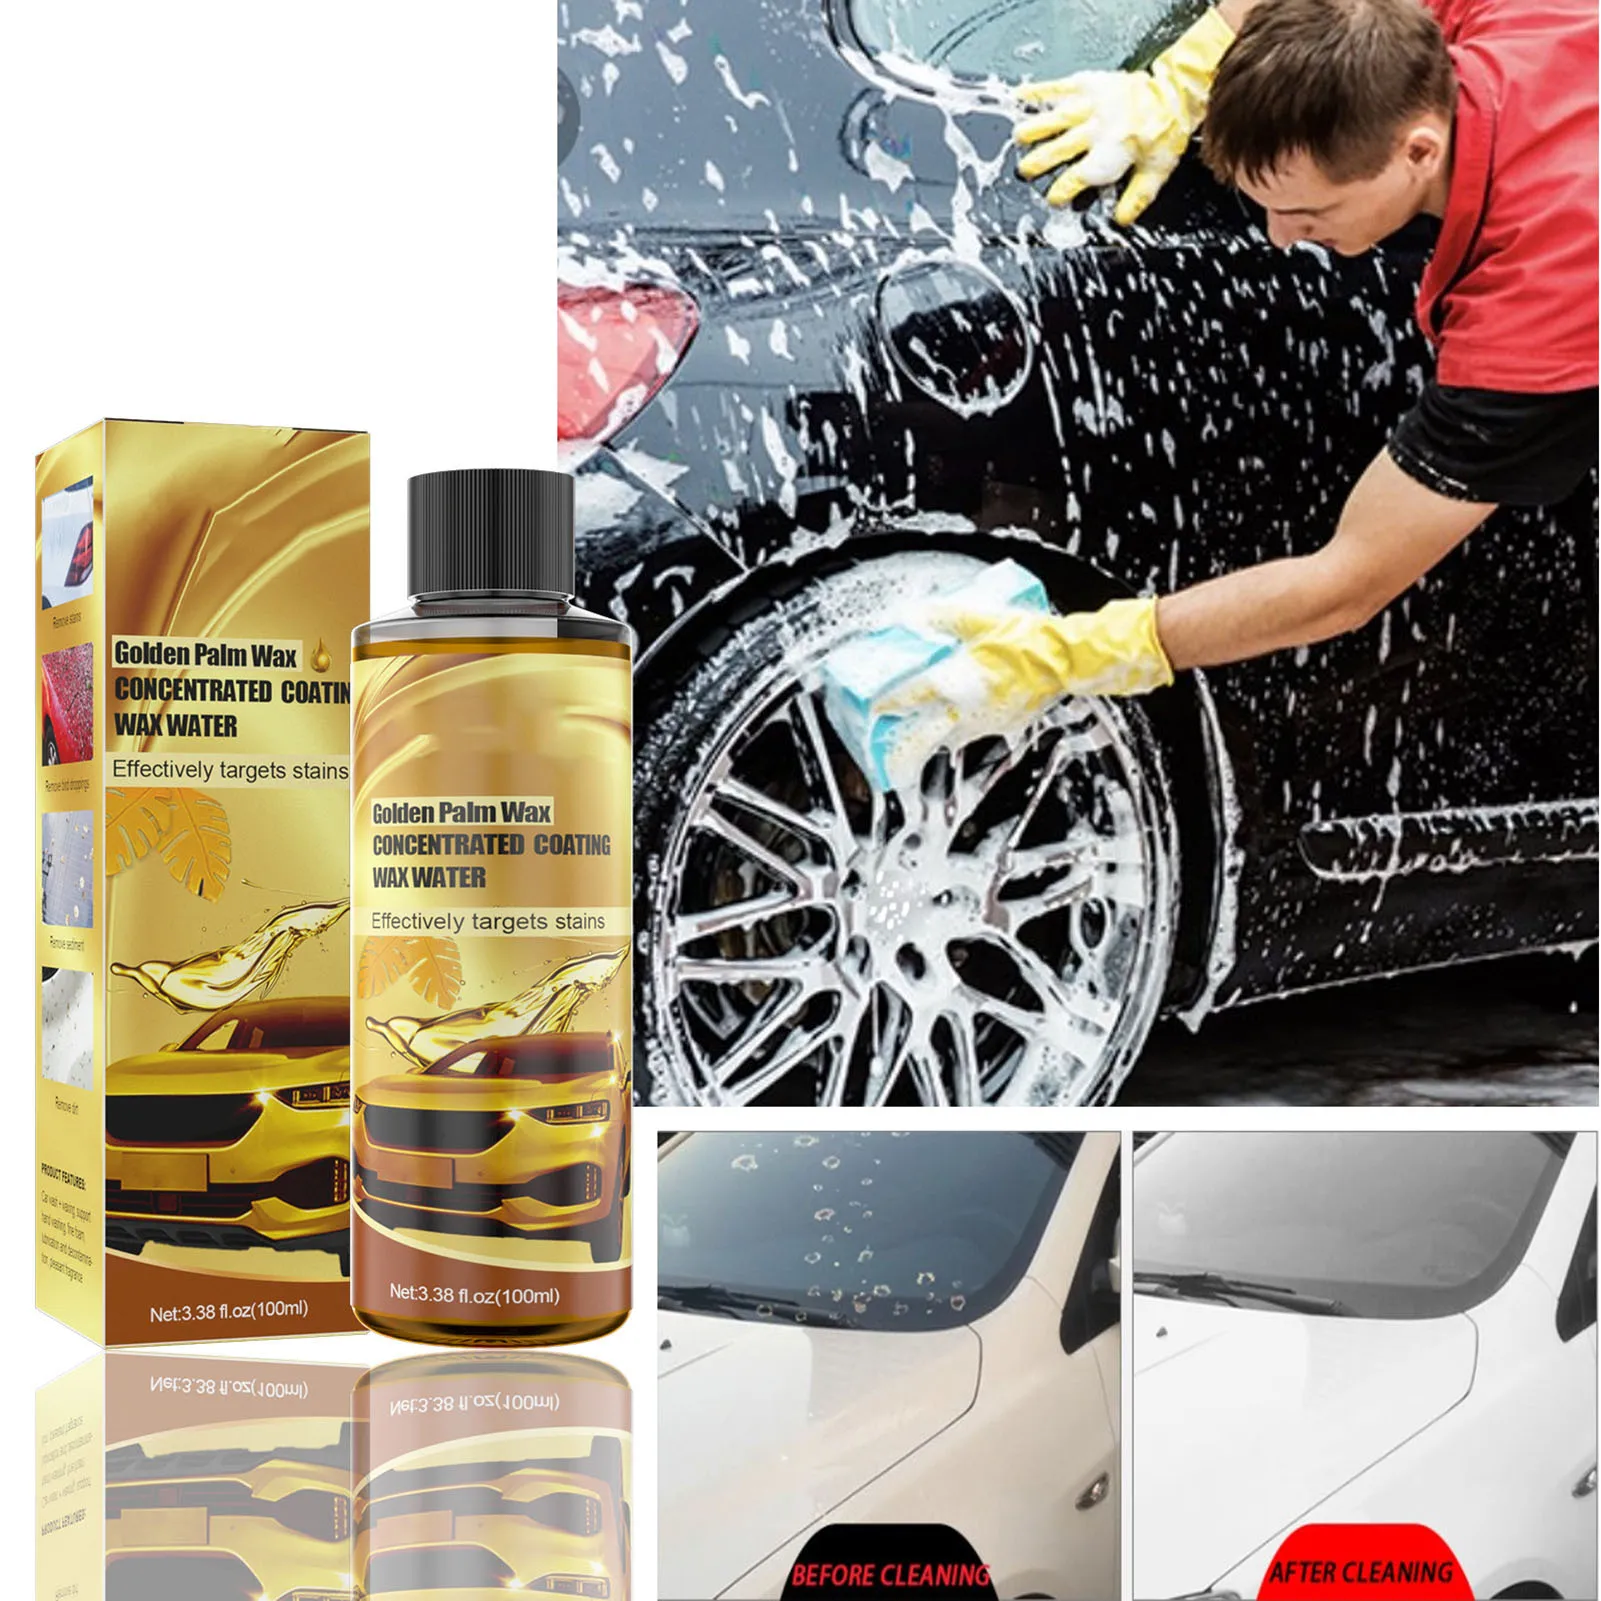 

2021 золотой воск для мойки автомобиля Carnauba, Многоцелевой Очиститель пены для автомобиля, средство для полировки, стойкое средство для очистки автомобиля